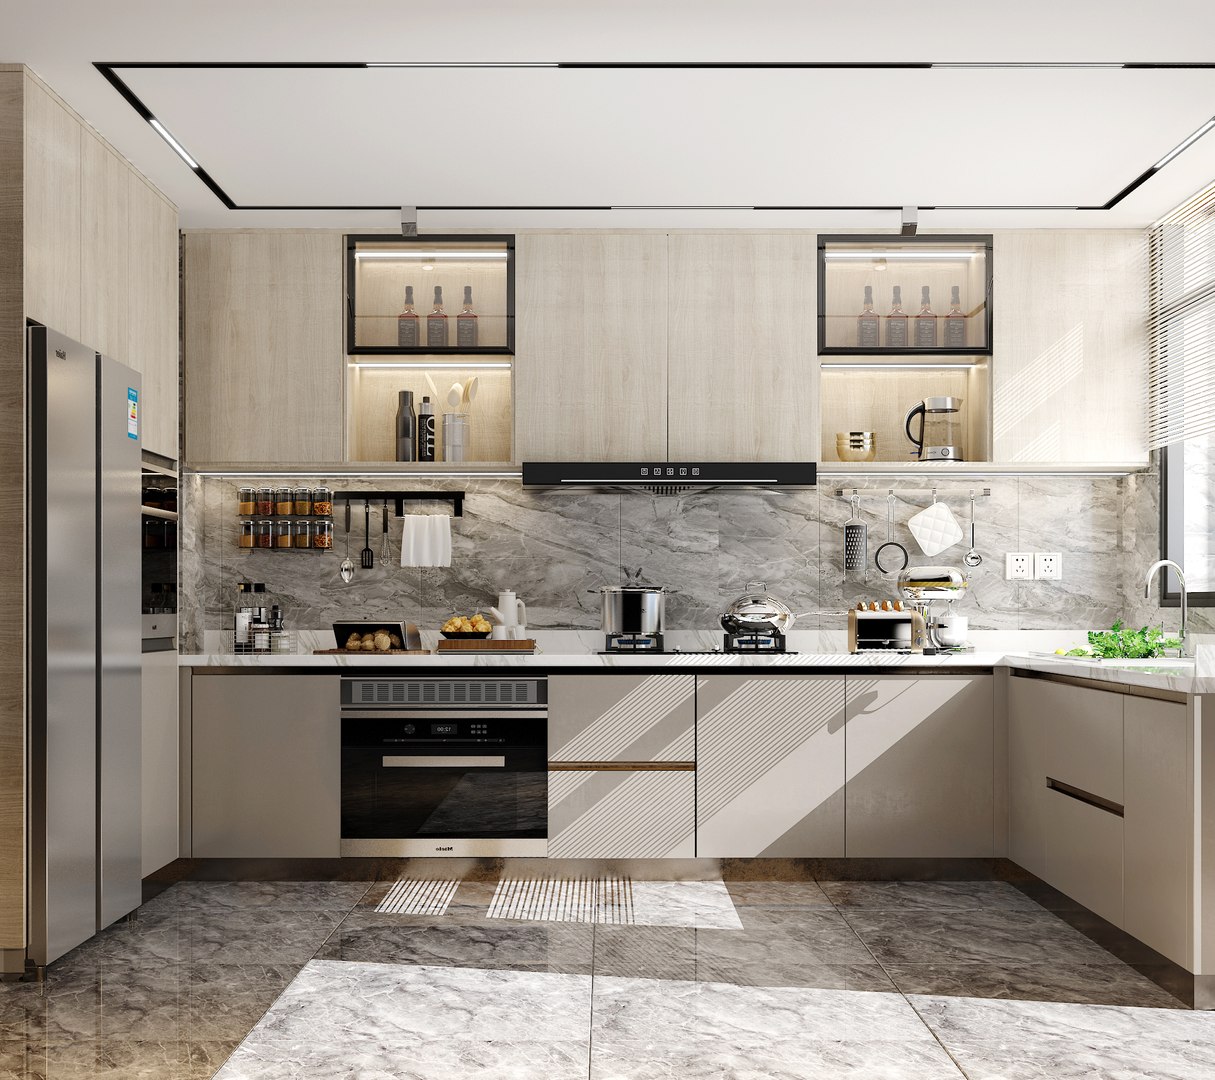 Villa Home Modern decoration kitchen 3D model - TurboSquid 2120816